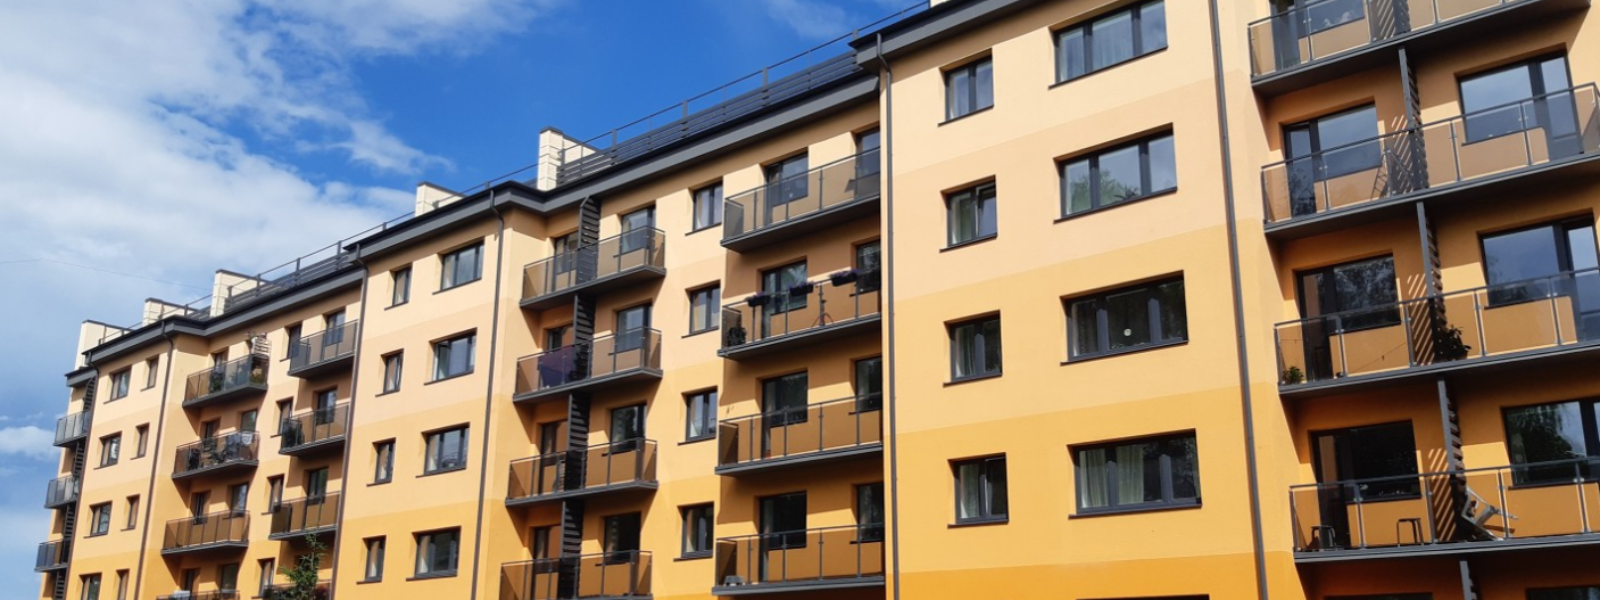 AURICU OÜ - OÜ Auricu on kodumaisel kapitalil põhinev korteriühistule renoveerimise terviklahendusi pakkuv ettevõte.